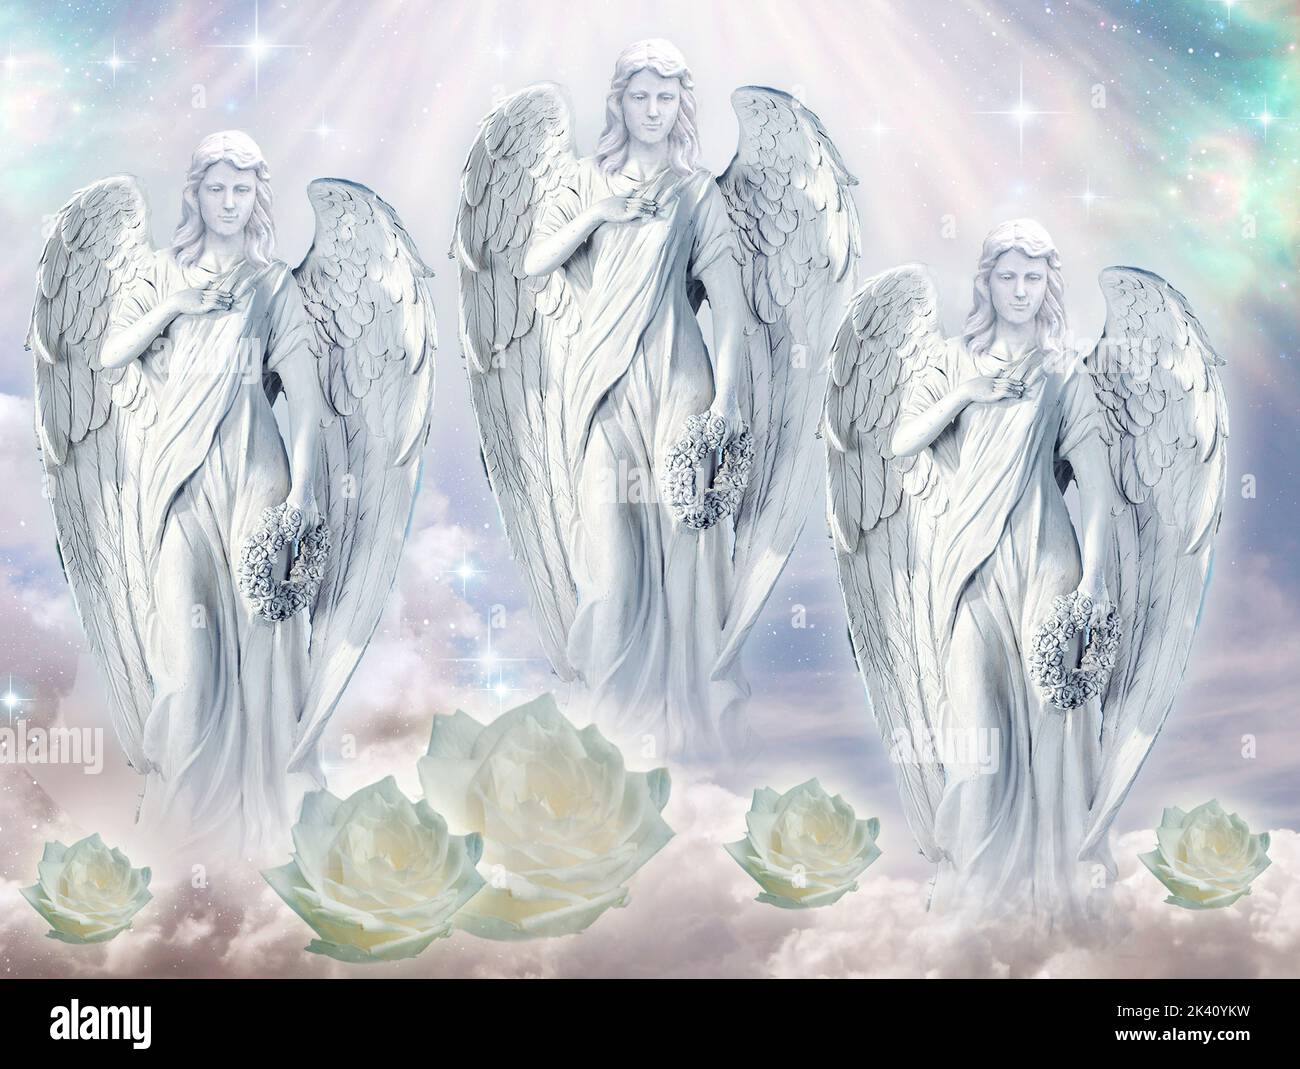 due angeli arcangeli con raggi di luce divini come concetto spirituale e religioso Foto Stock